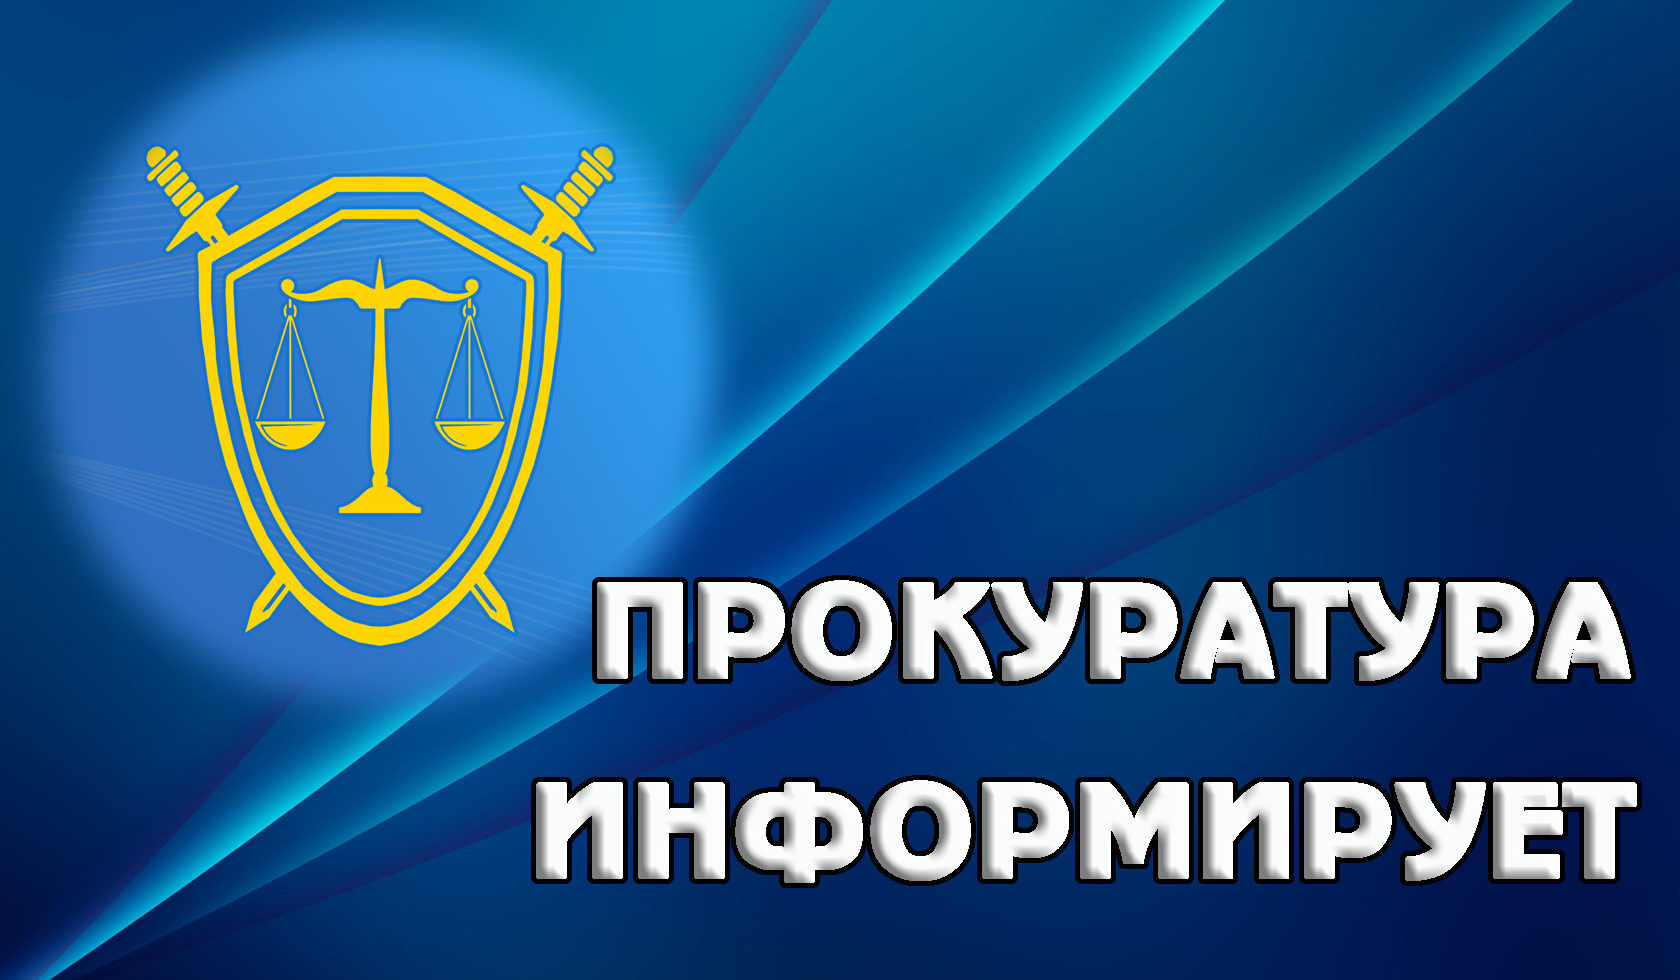 Прокуратура Засвияжского района г. Ульяновска разъясняет требования законодательства о раскрытии, сообщении управляющими компаниями сведений о своей деятельности.